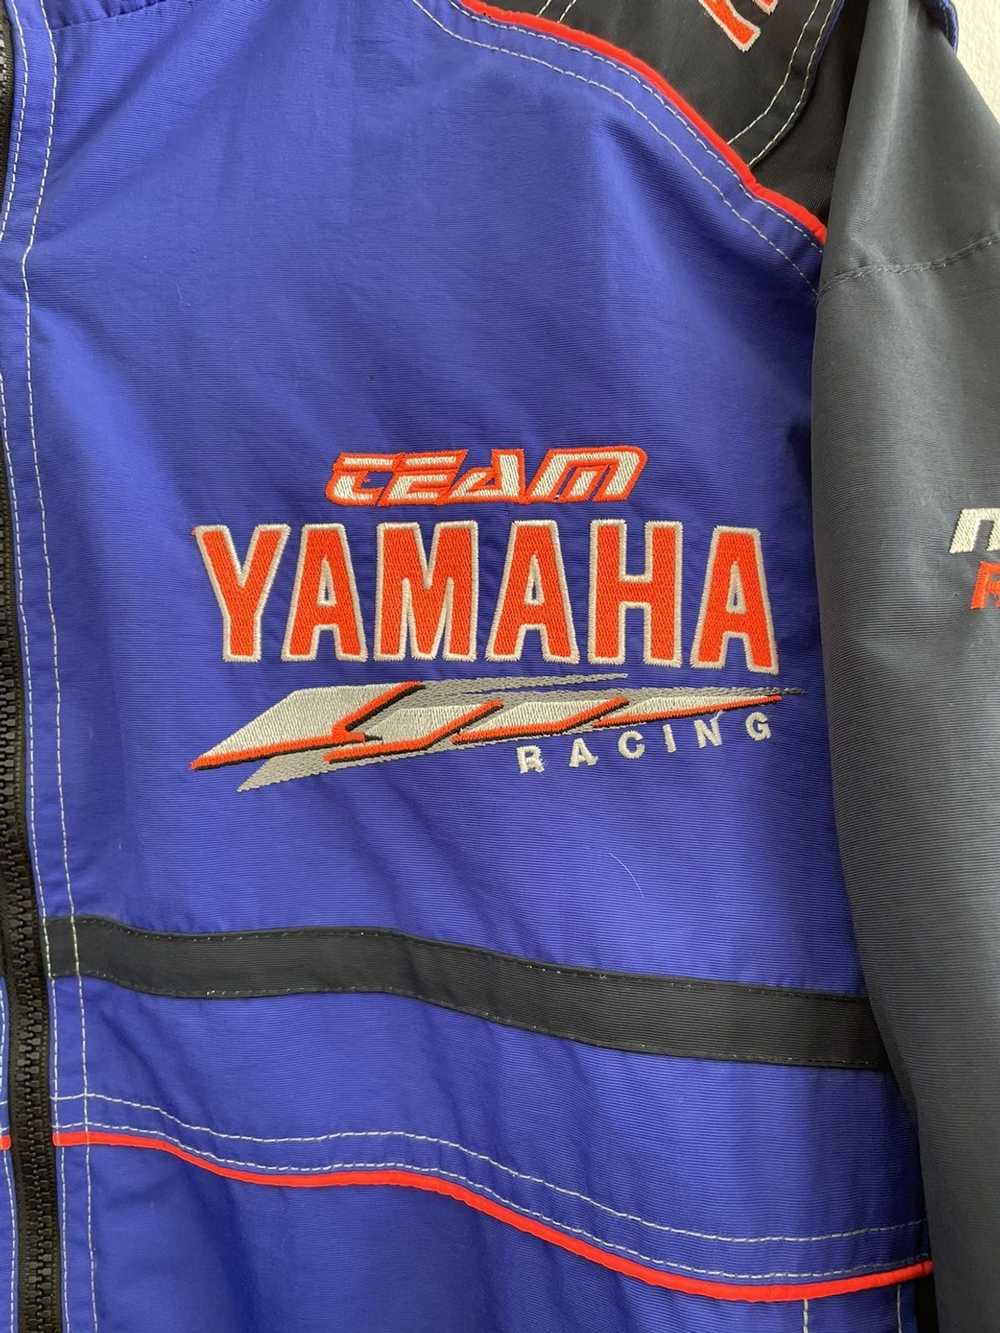 MOTO × Racing × Yamaha Yamaha Racing Moto Jacket - image 3